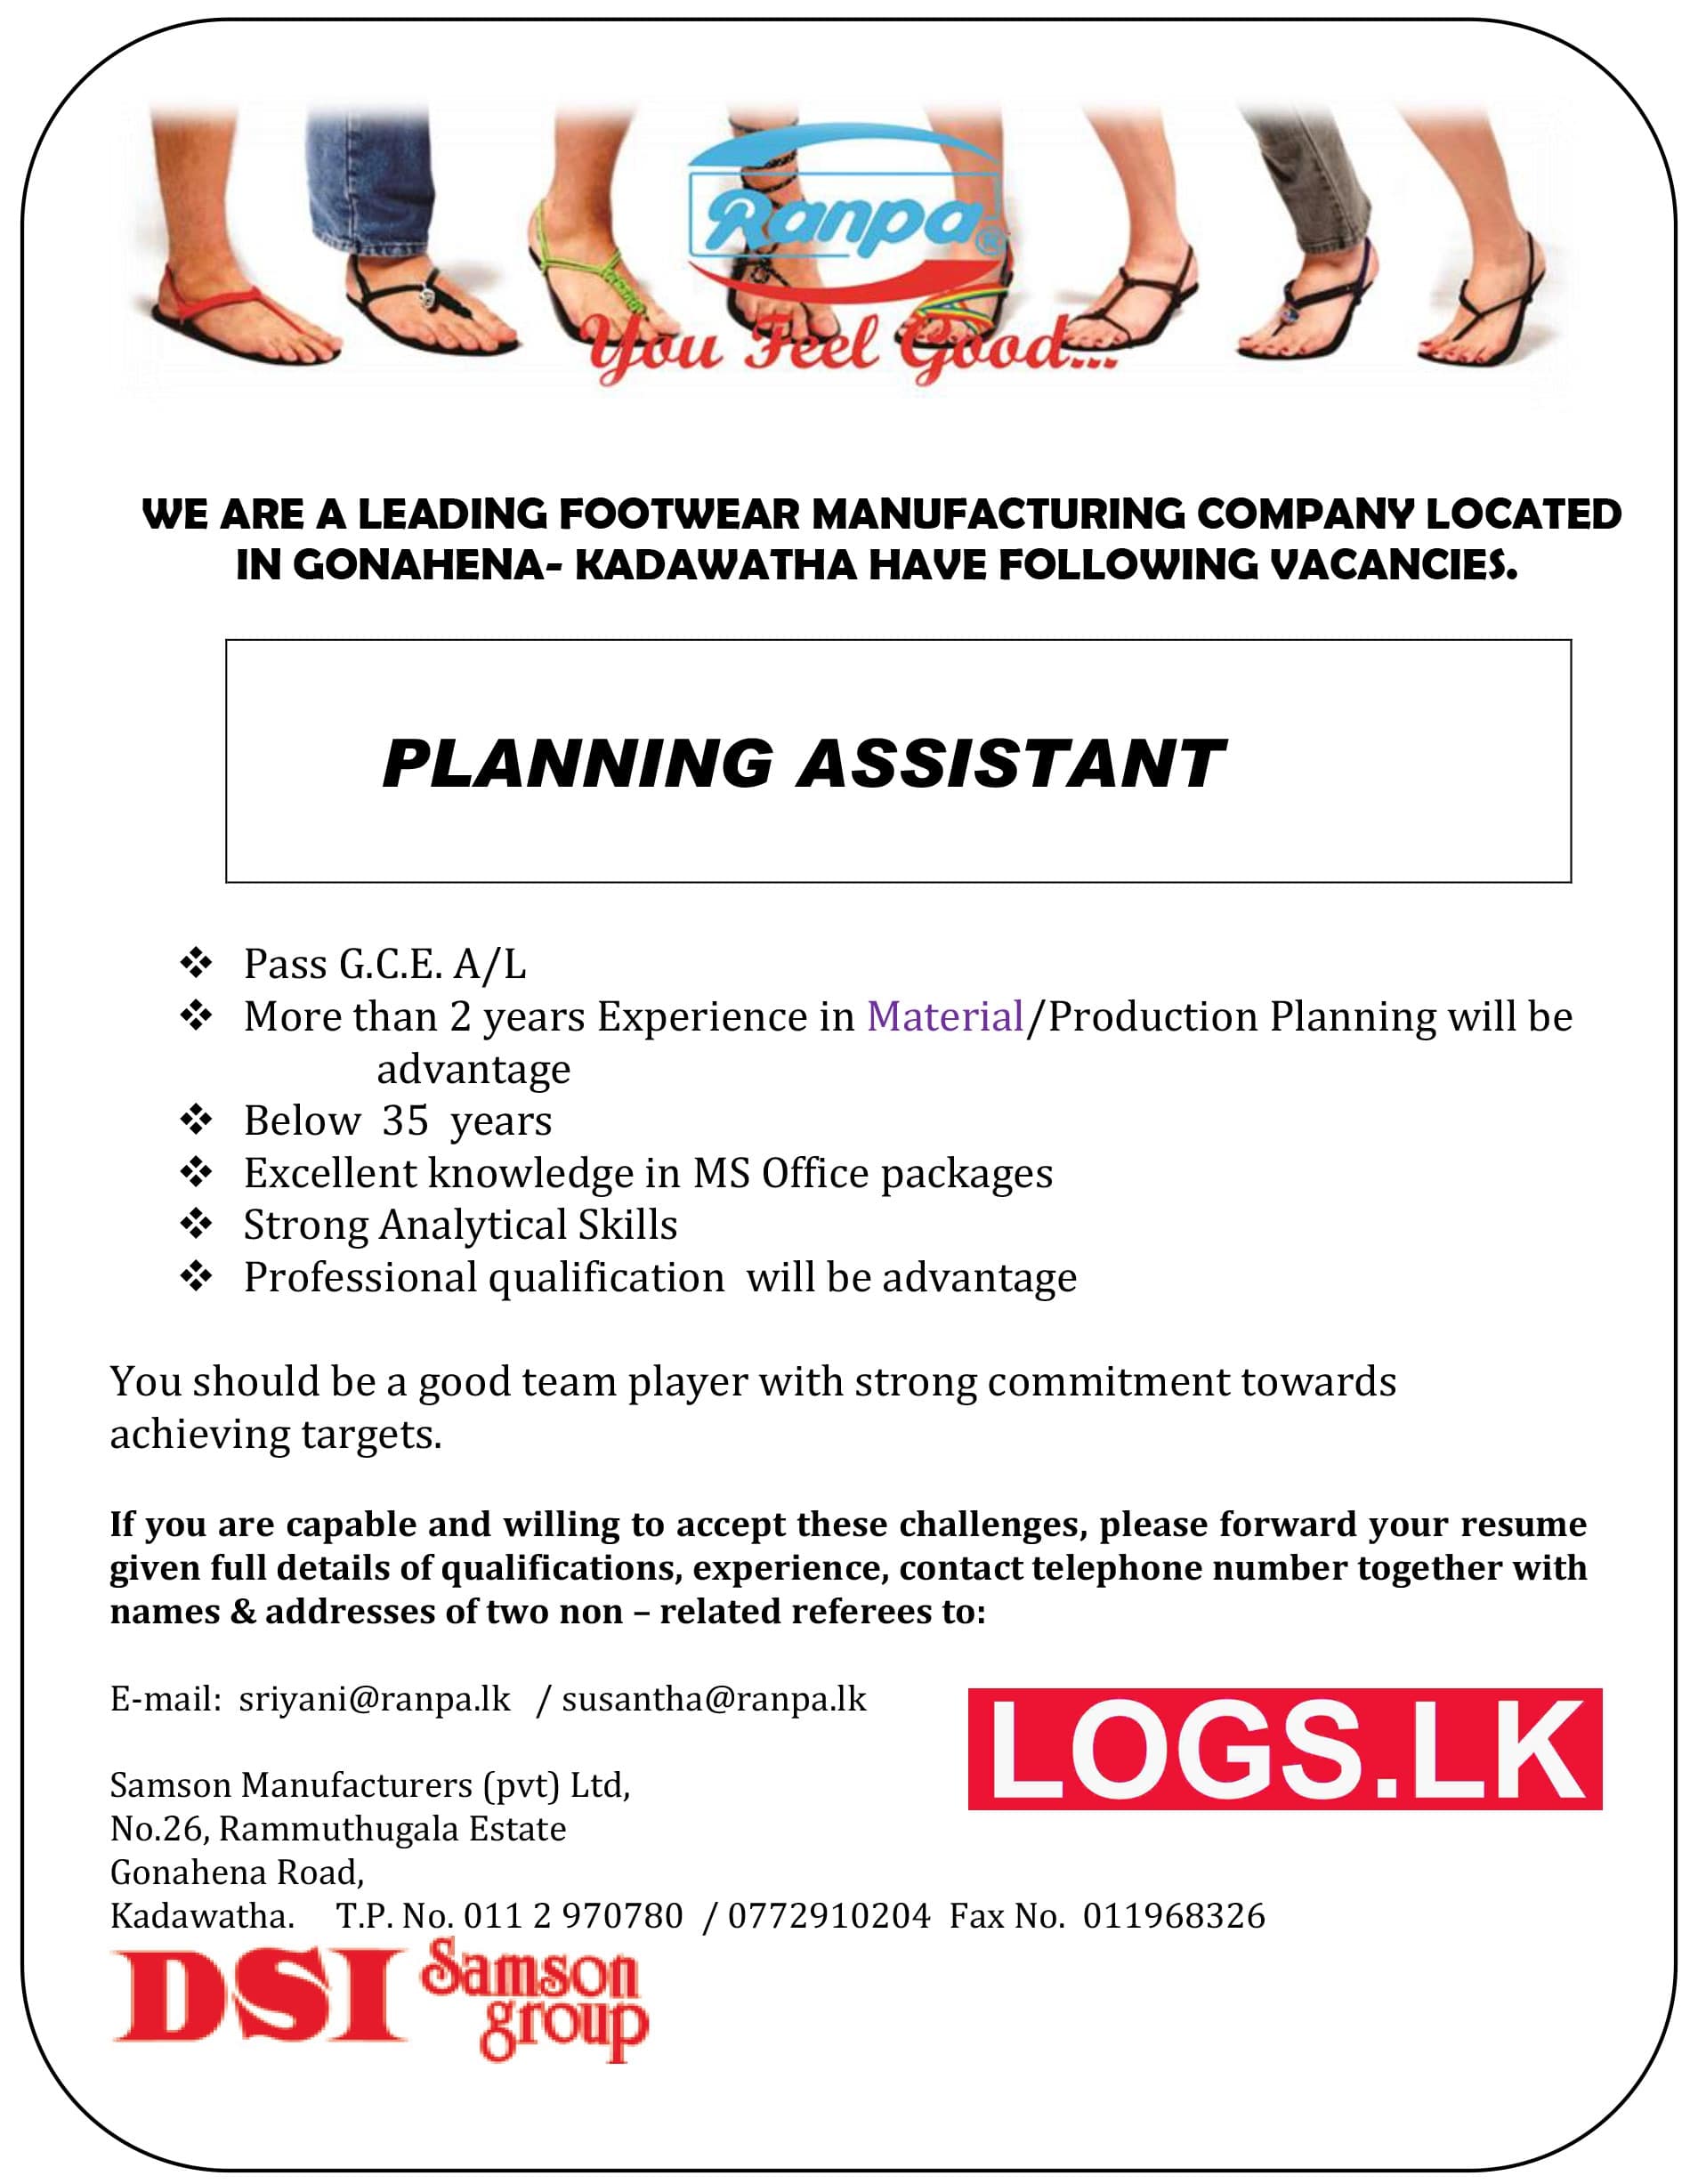 Planning Assistant Job Vacancy at Samson Manufactures (Pvt) Ltd Job Vacancies